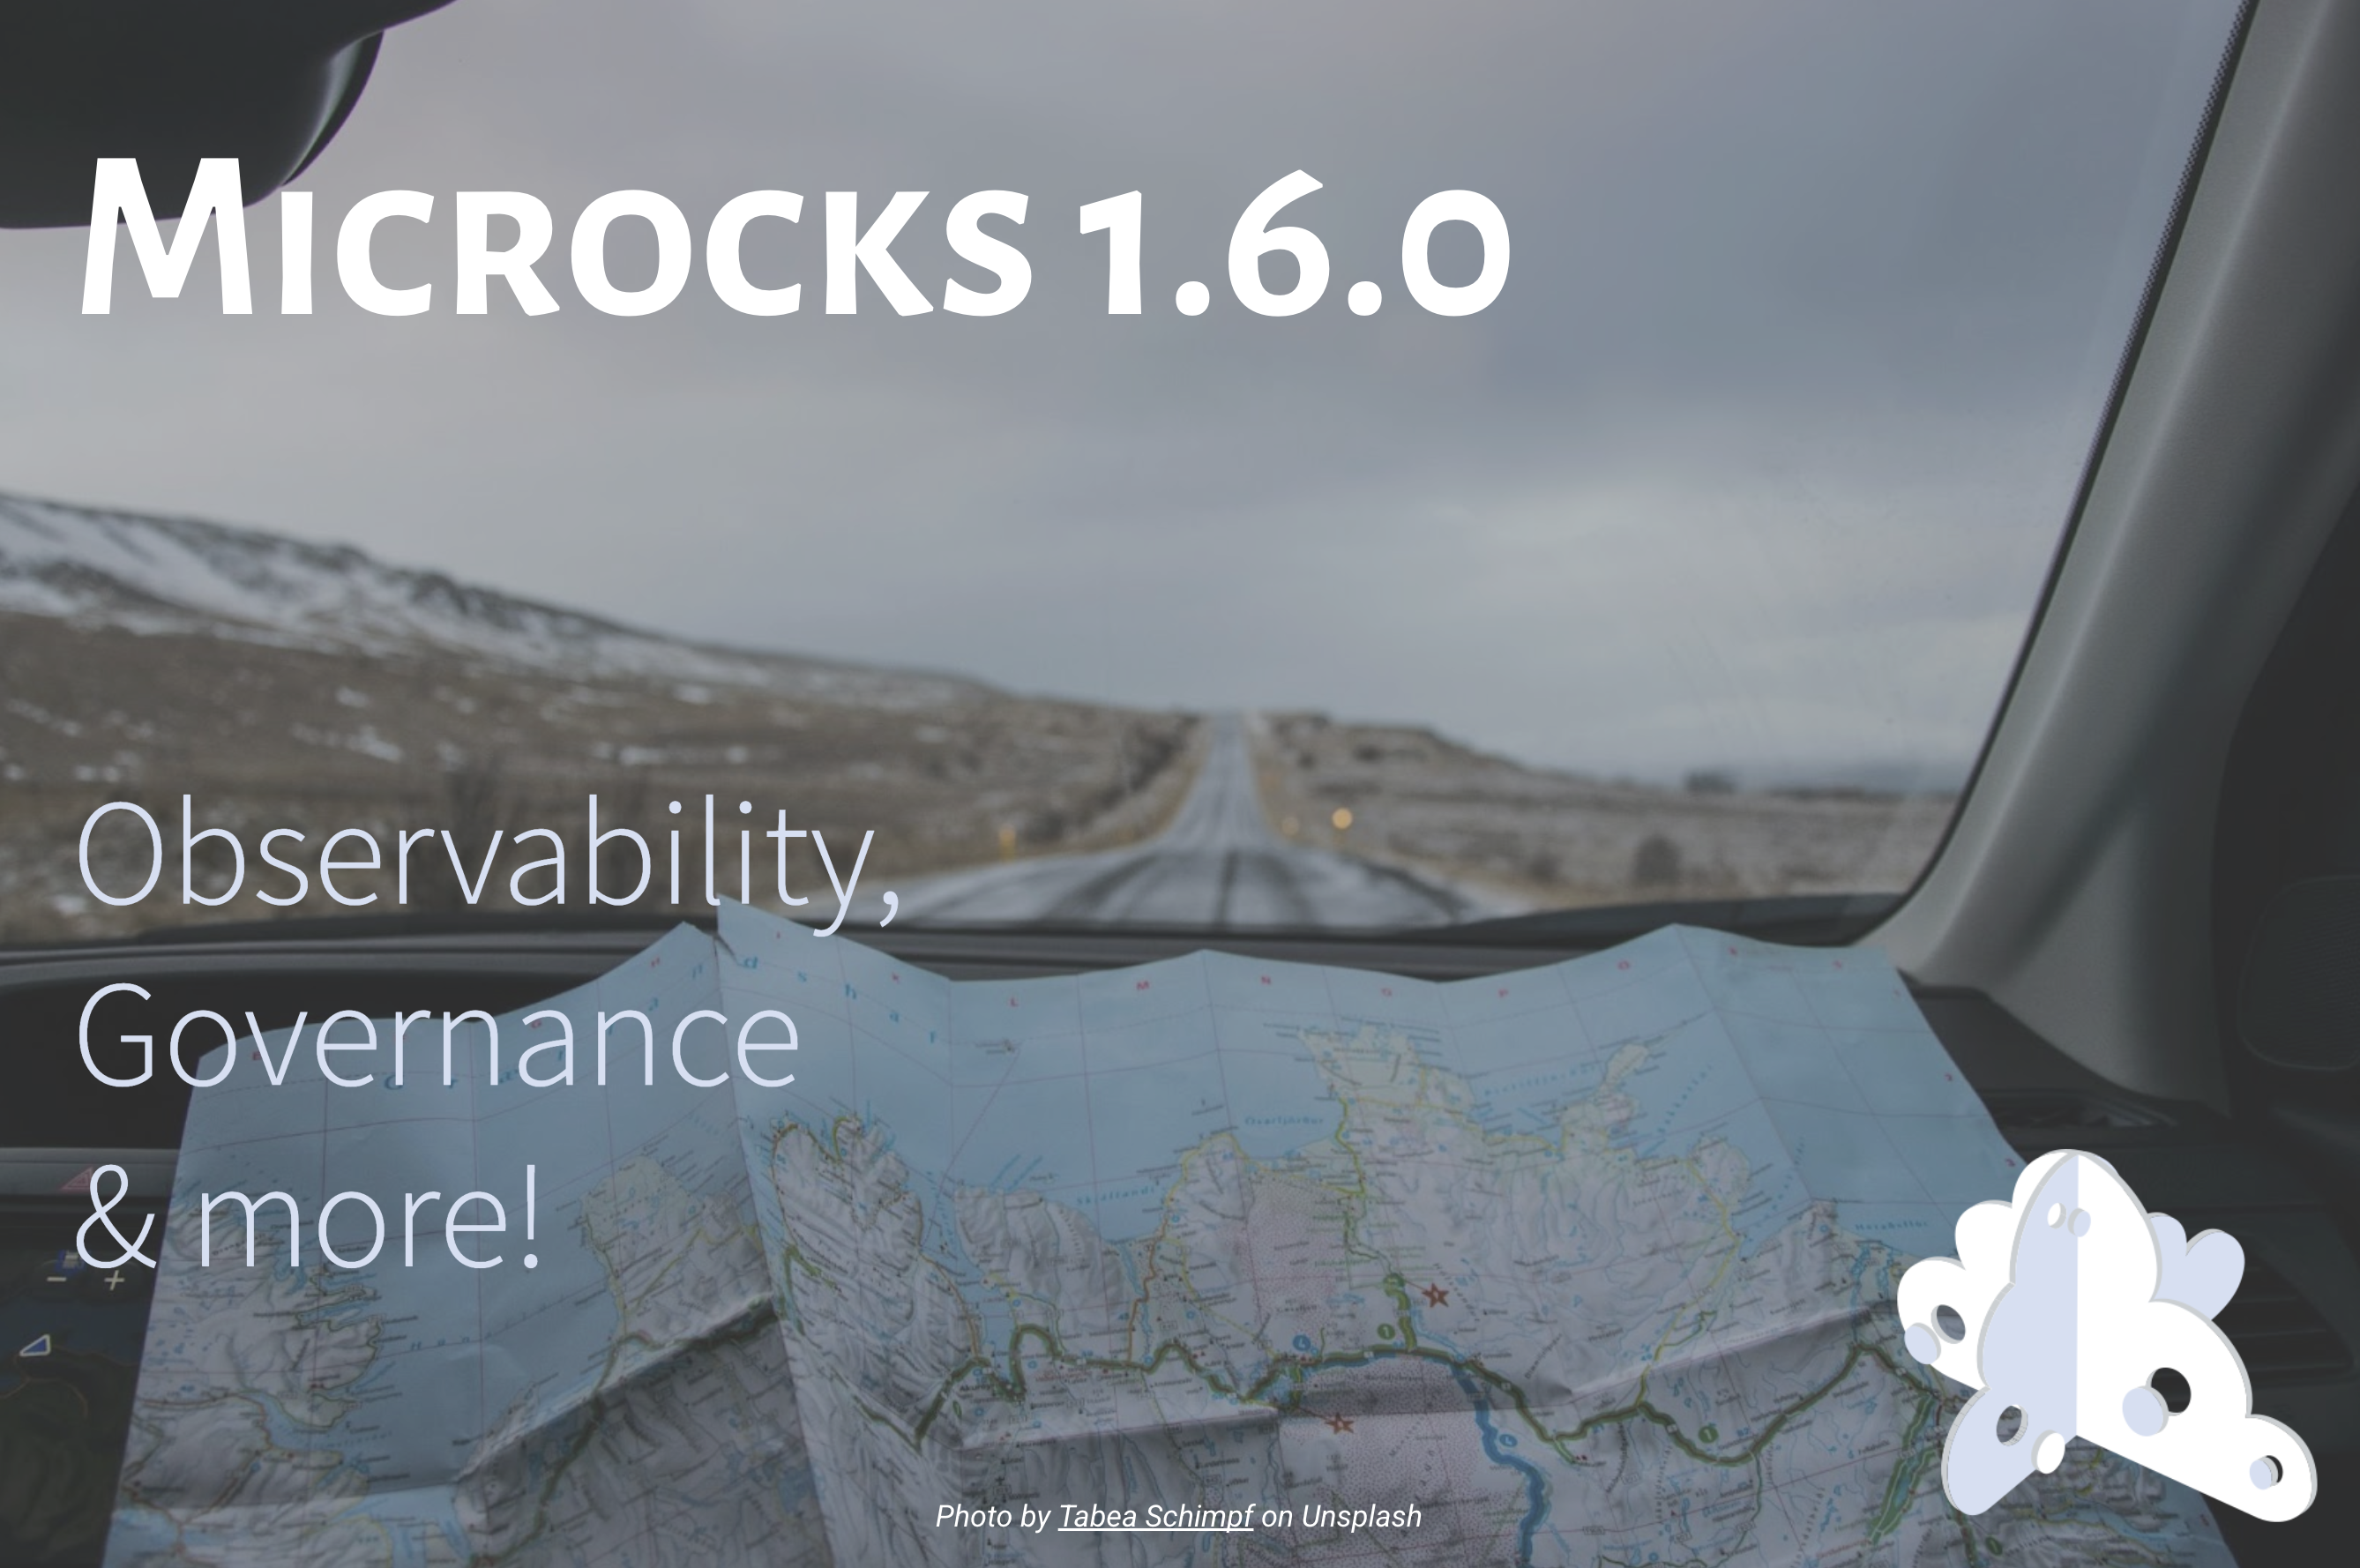 Microcks 1.6.0 release 🚀